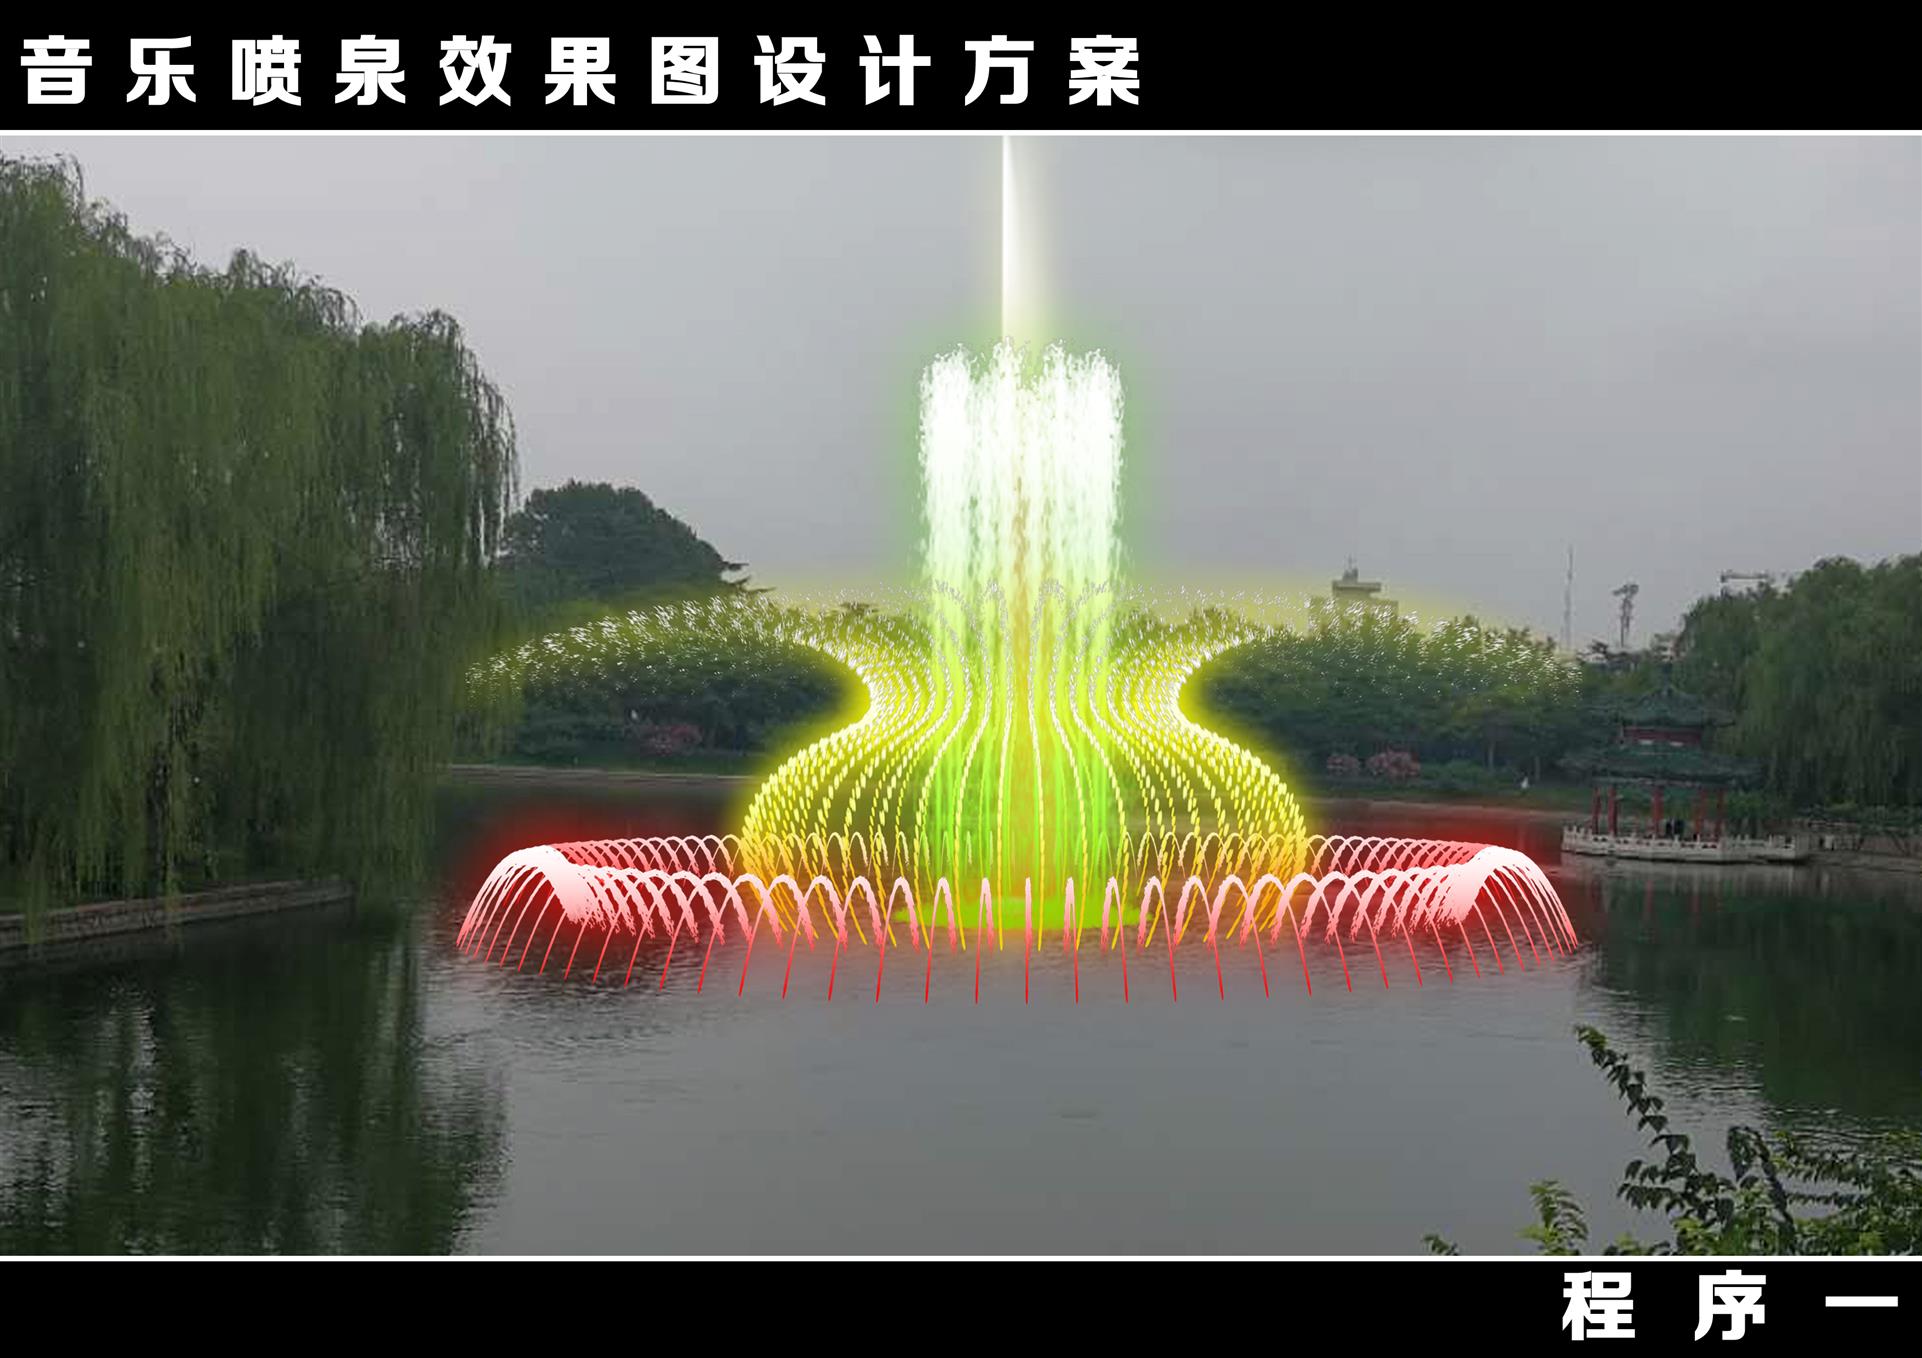 彩色音乐喷泉 乌鲁木齐大型激光字幕喷泉定制 河北传古园林古建筑工程有限公司